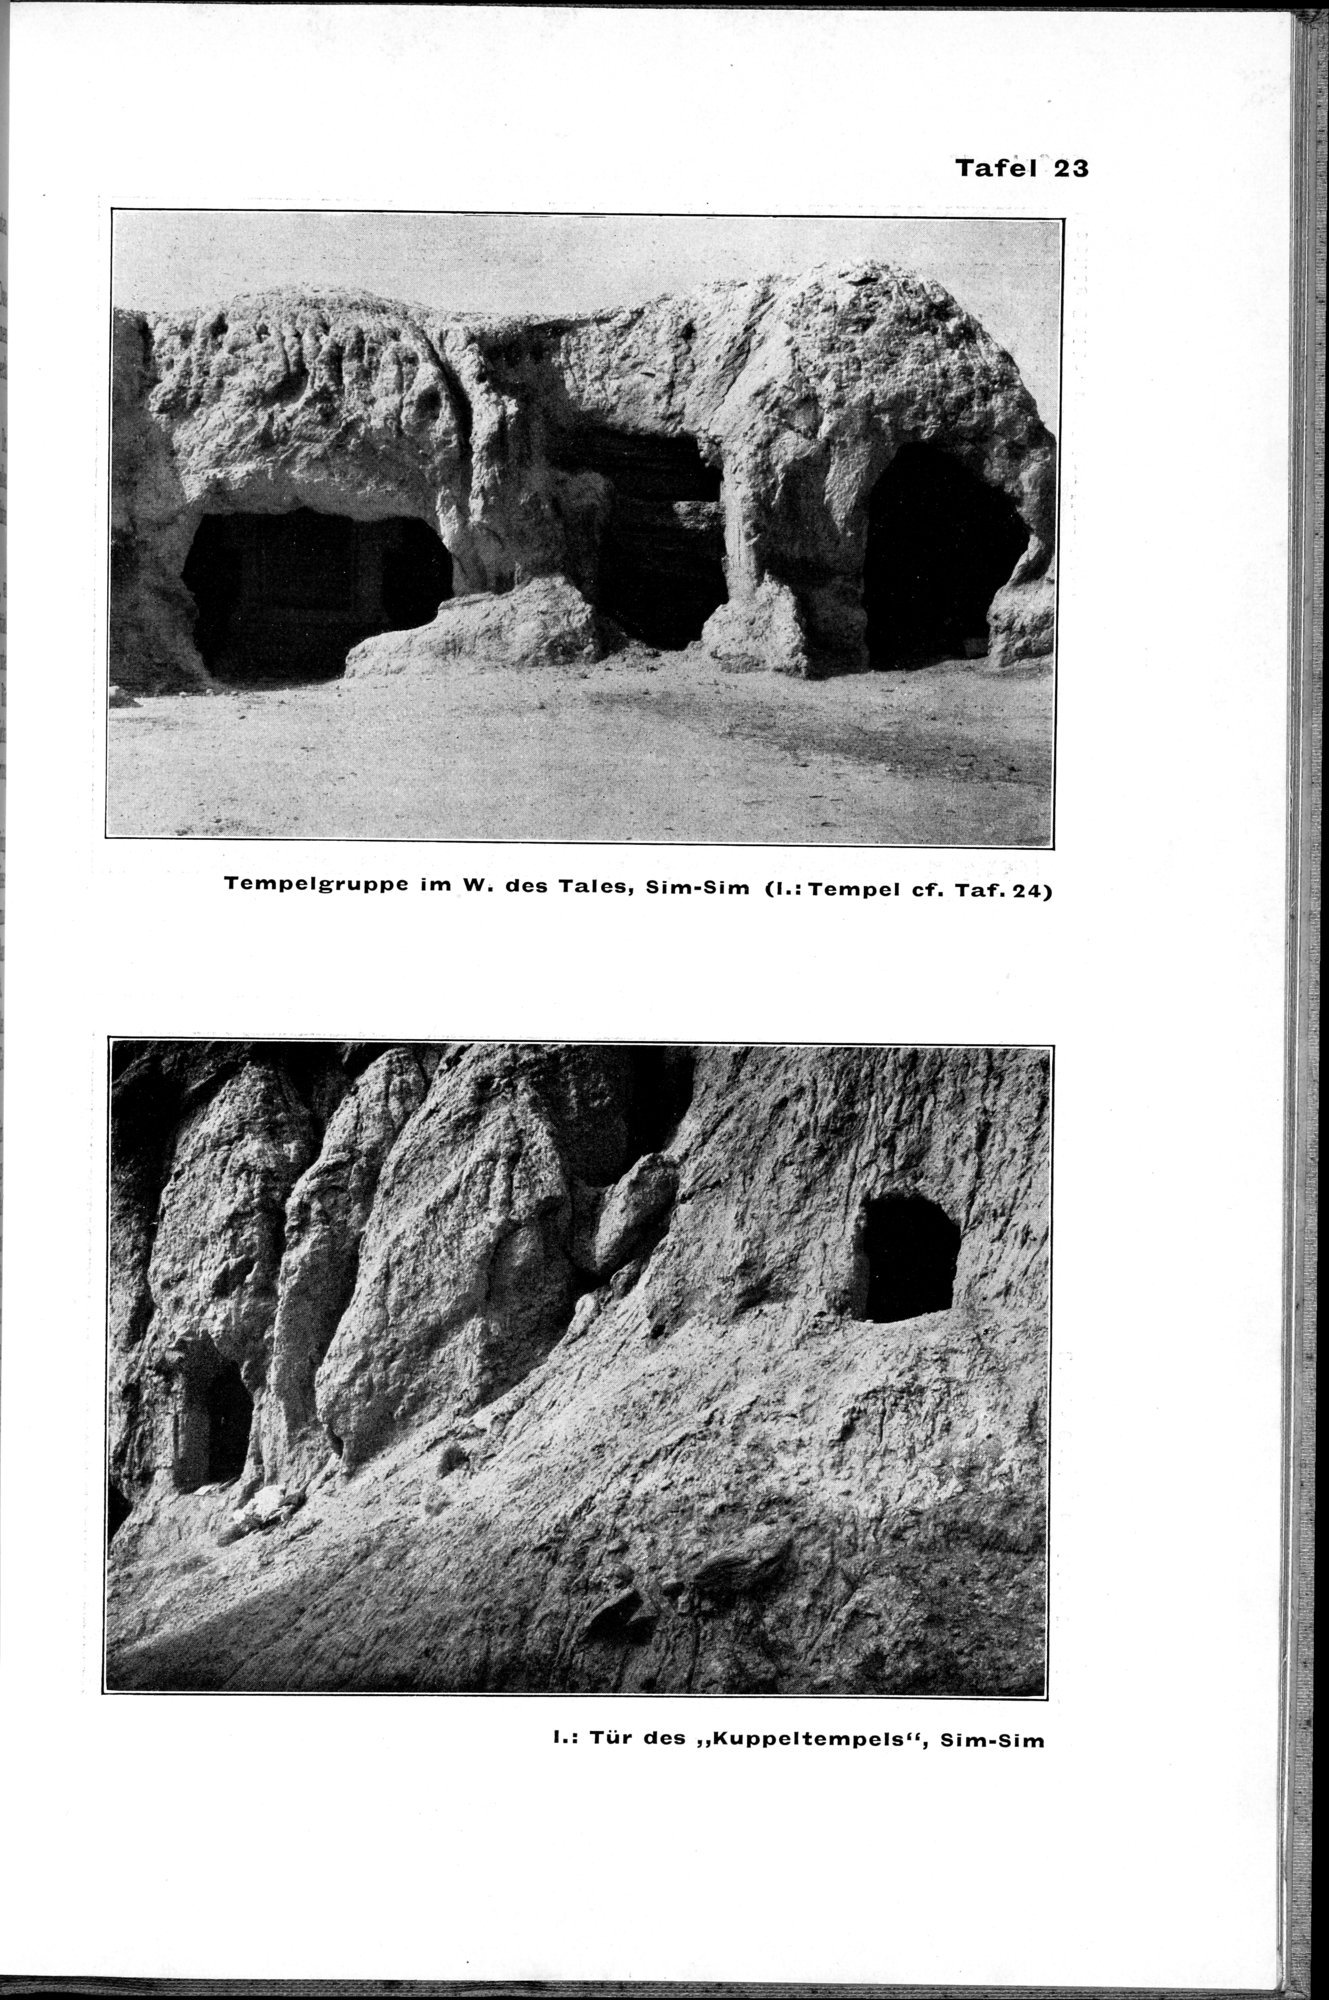 Von Land und Leuten in Ostturkistan : vol.1 / Page 131 (Grayscale High Resolution Image)